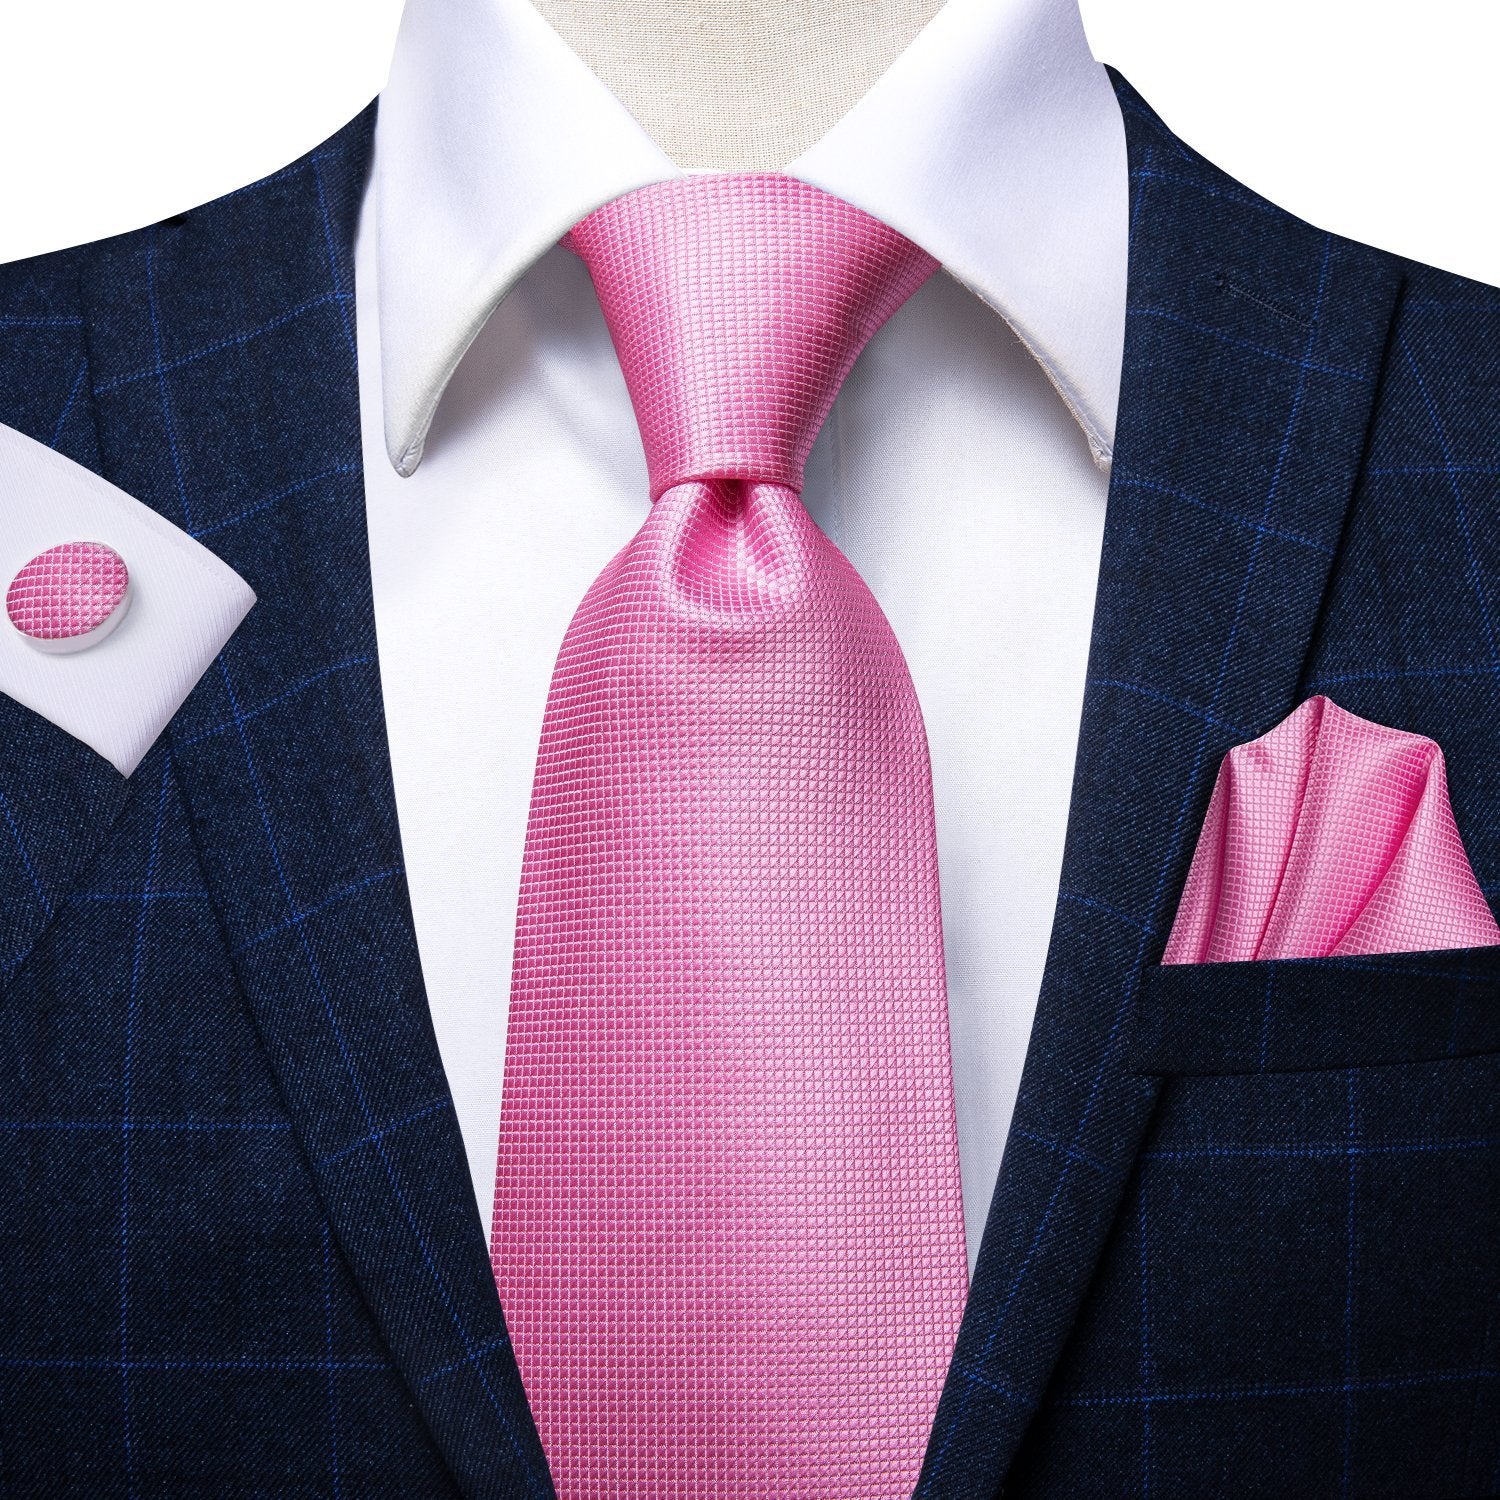 Pink Plaid Tie Handkerchief Cufflinks Set